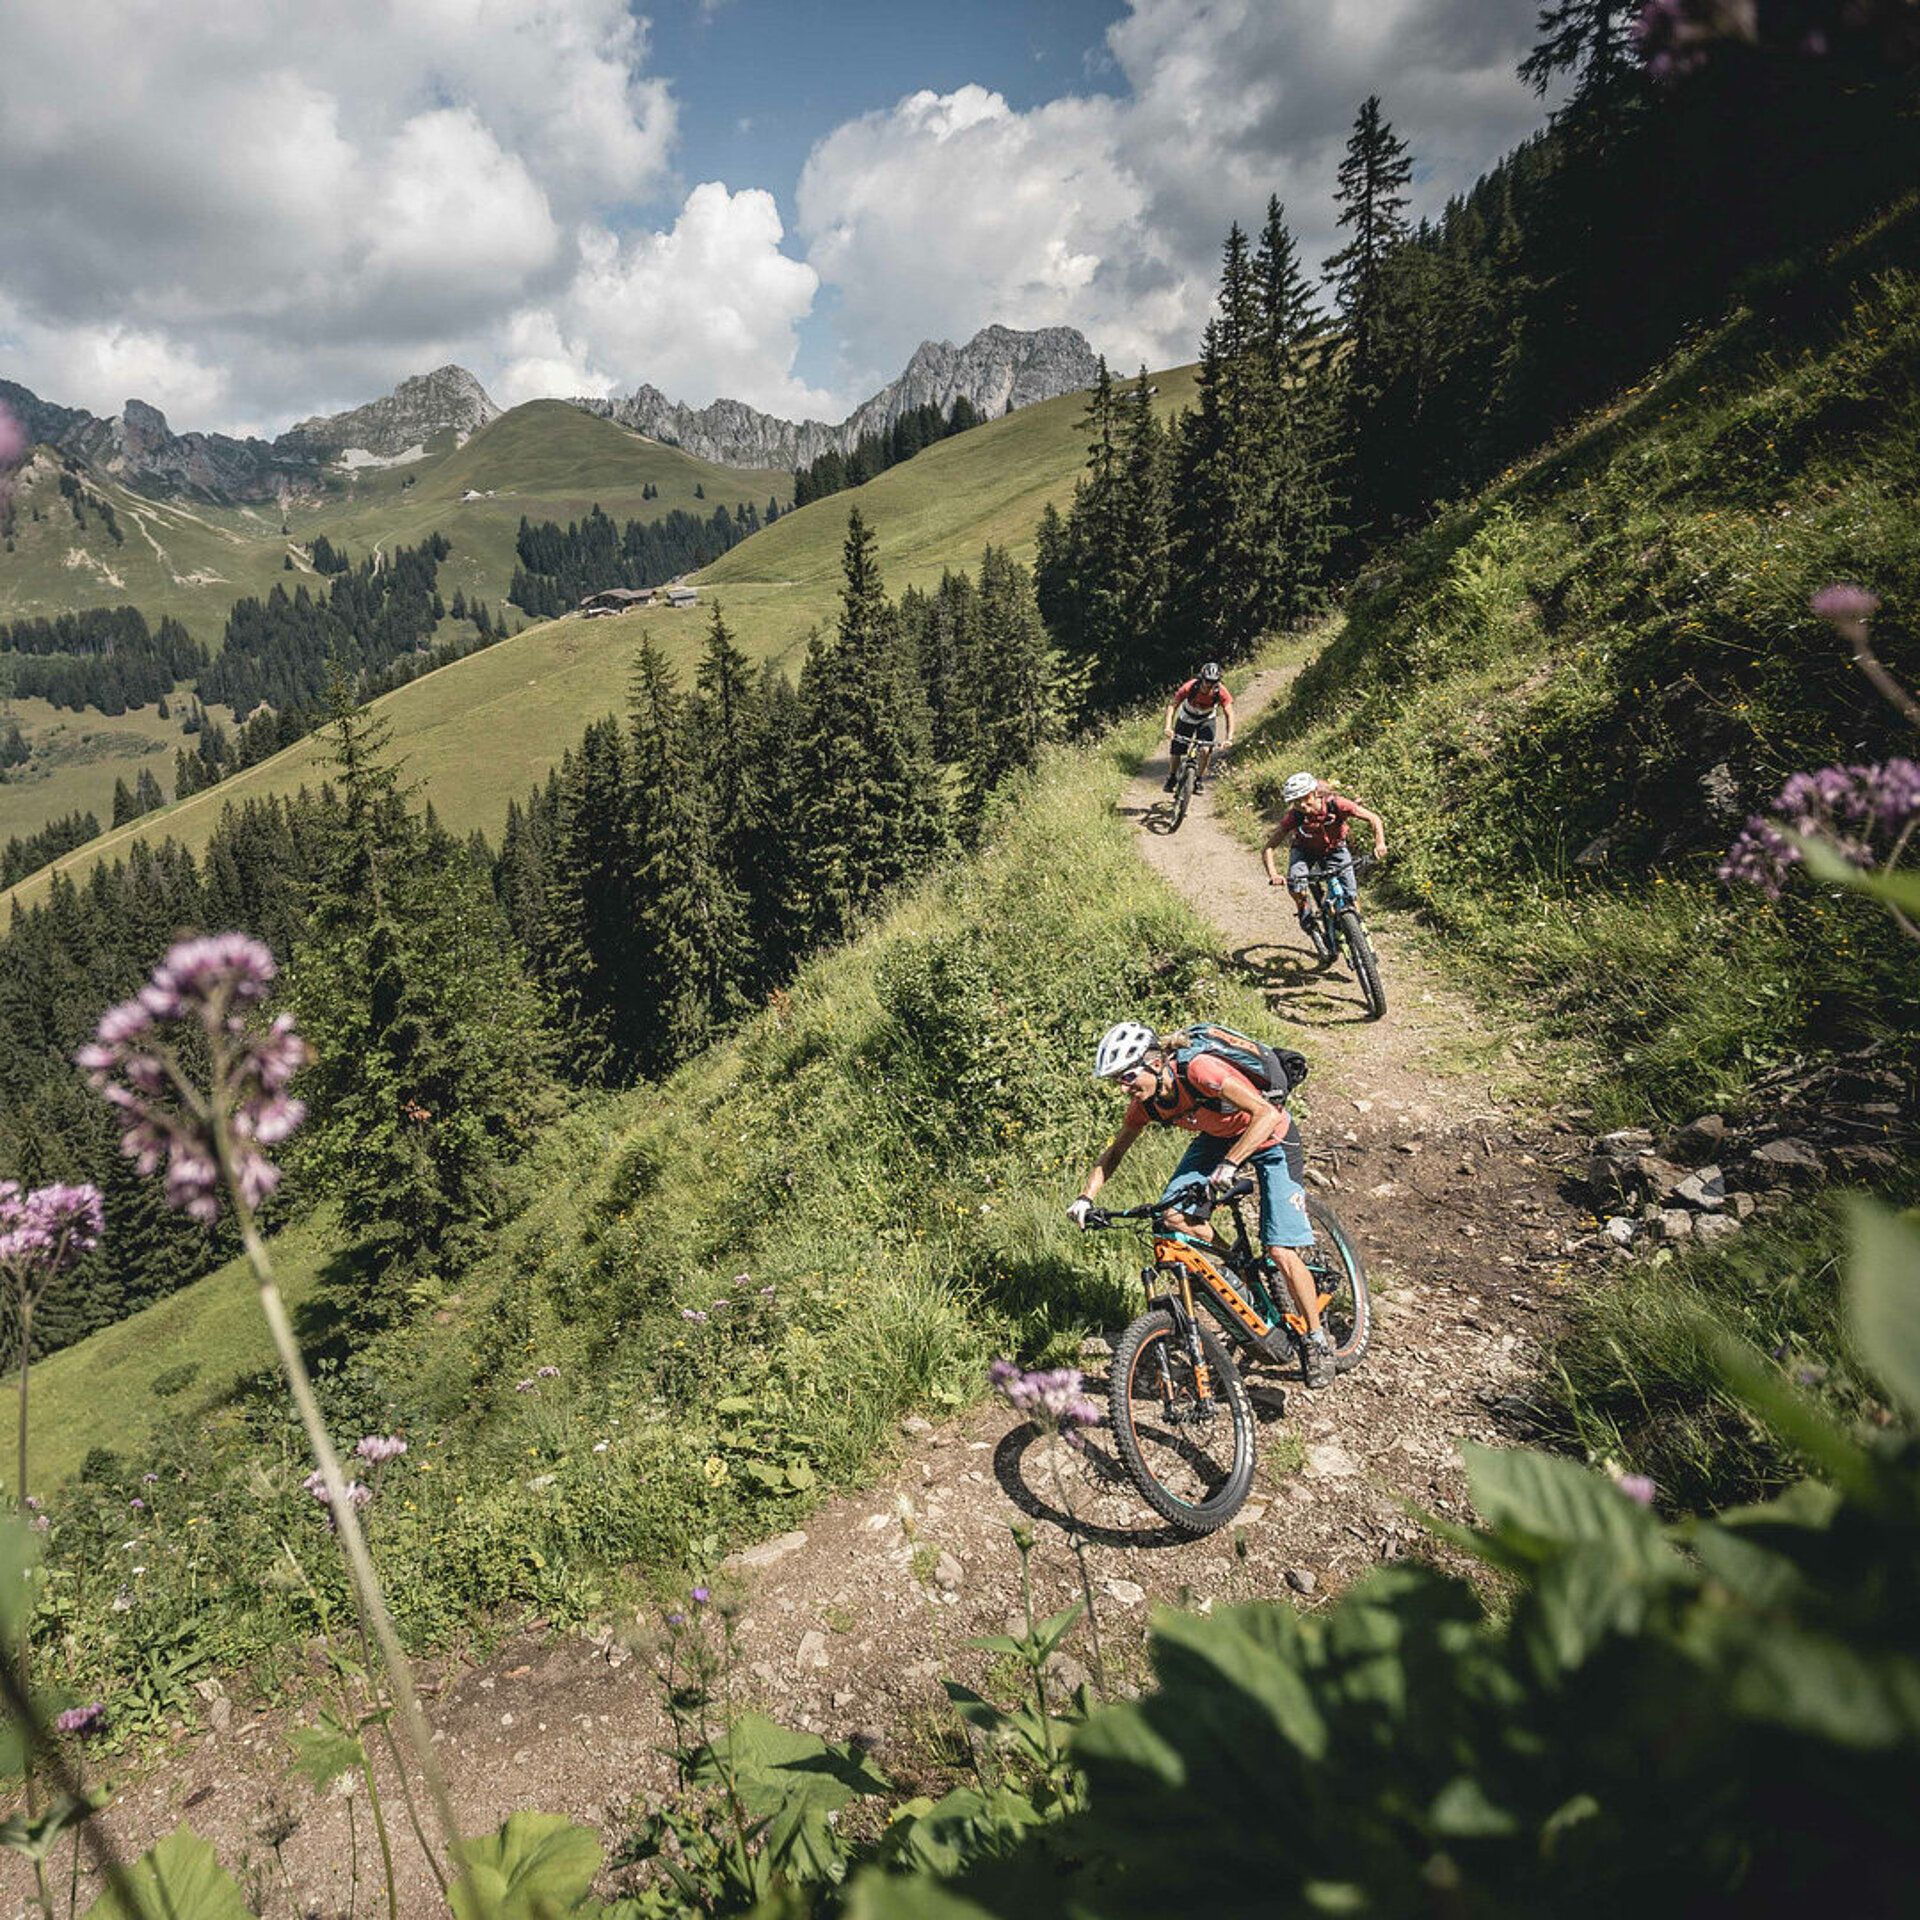 Zwei Frauen und ein Mann fahren auf ihren E-Mountainbike den Schneit Trail mit Mittelberg her. Der Trail ist breit und erdig. Im Vordergund hat es ein paar unscharfe, violette Blumen.